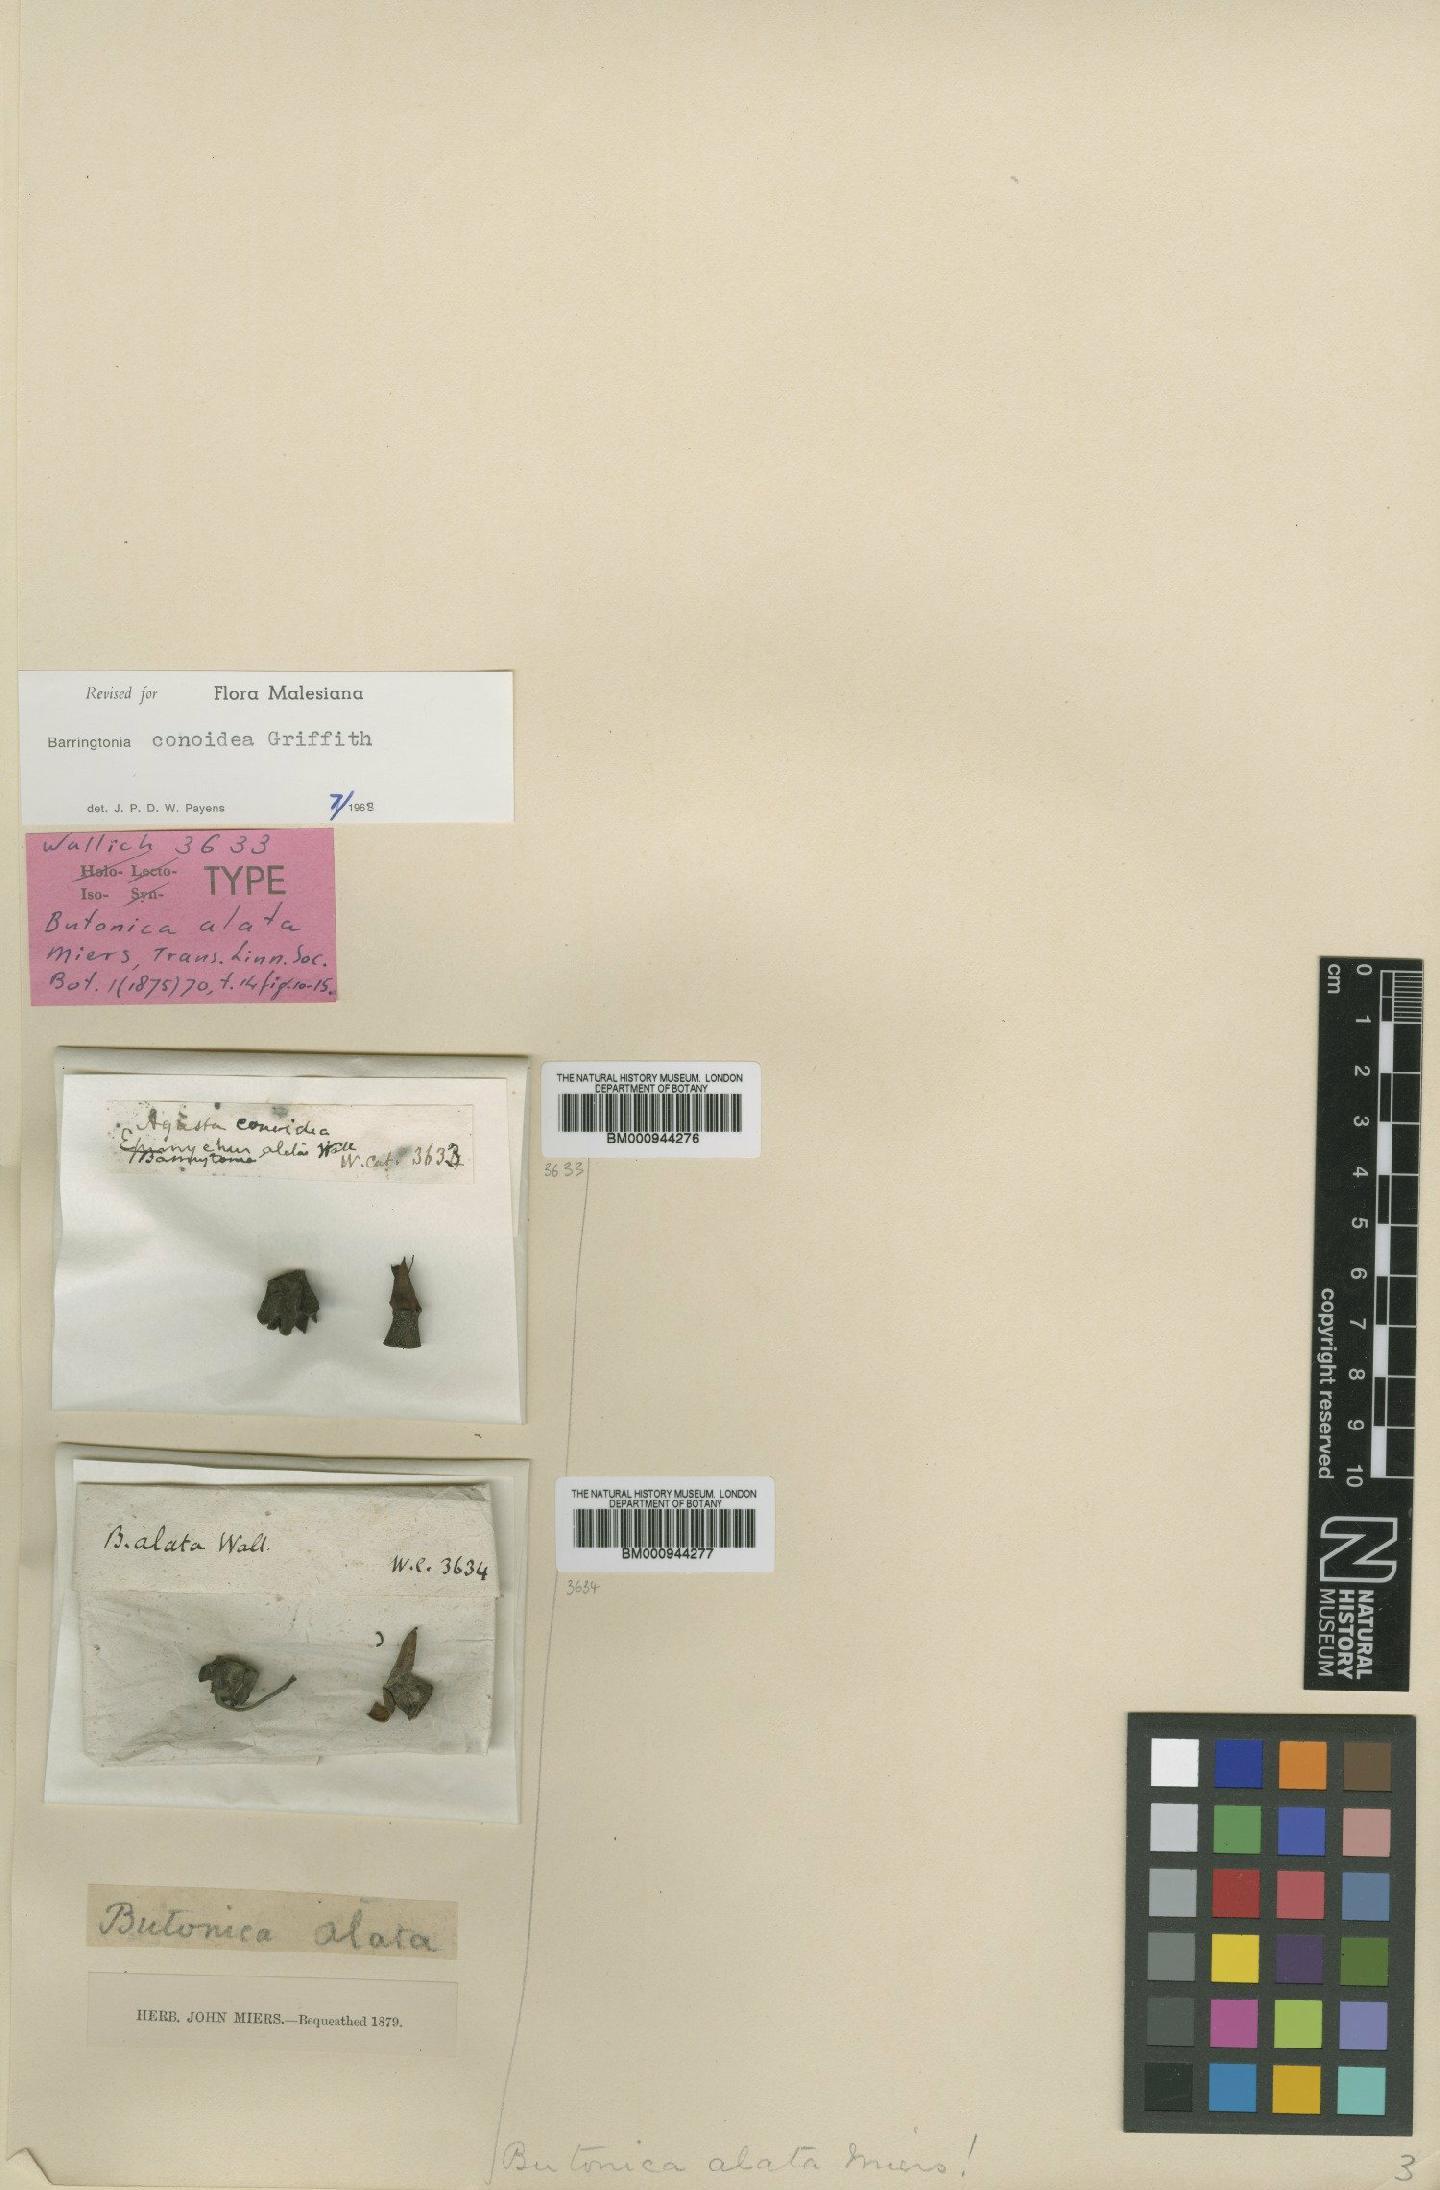 To NHMUK collection (Barringtonia conoidea Griff.; Isotype; NHMUK:ecatalogue:434167)